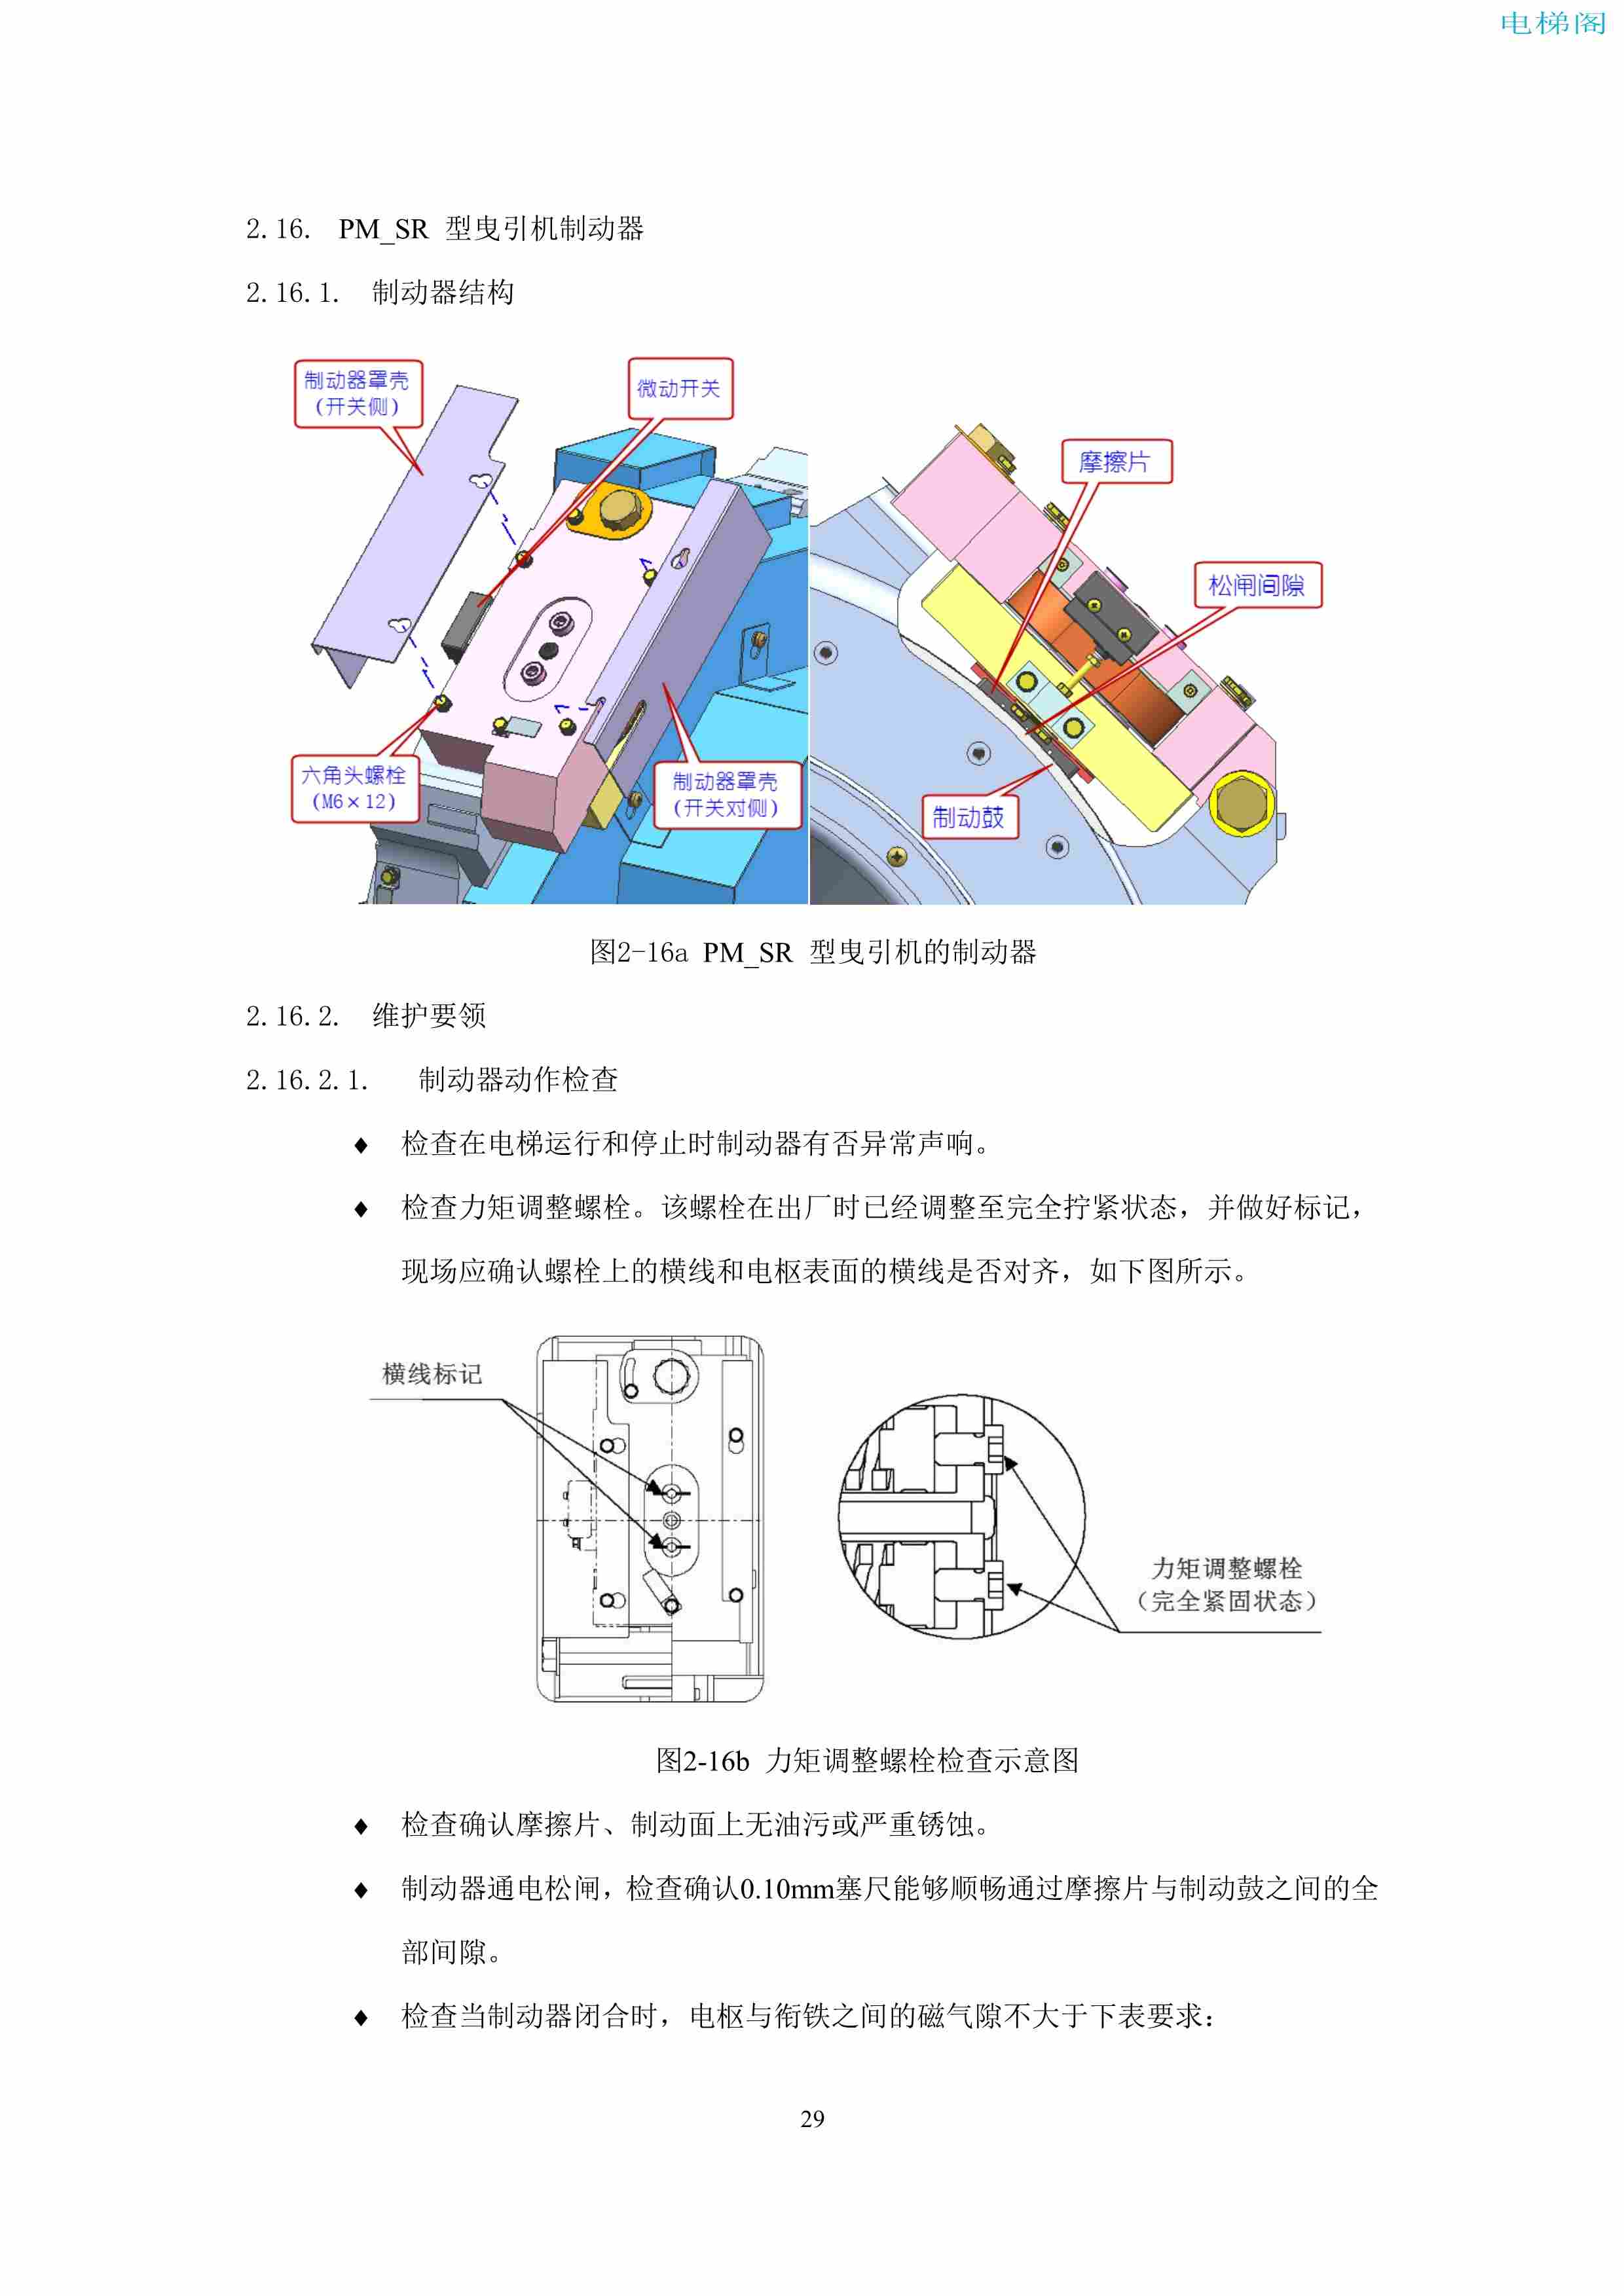 上海三菱电梯有限公司电梯制动器维护作业要领汇编_31.jpg